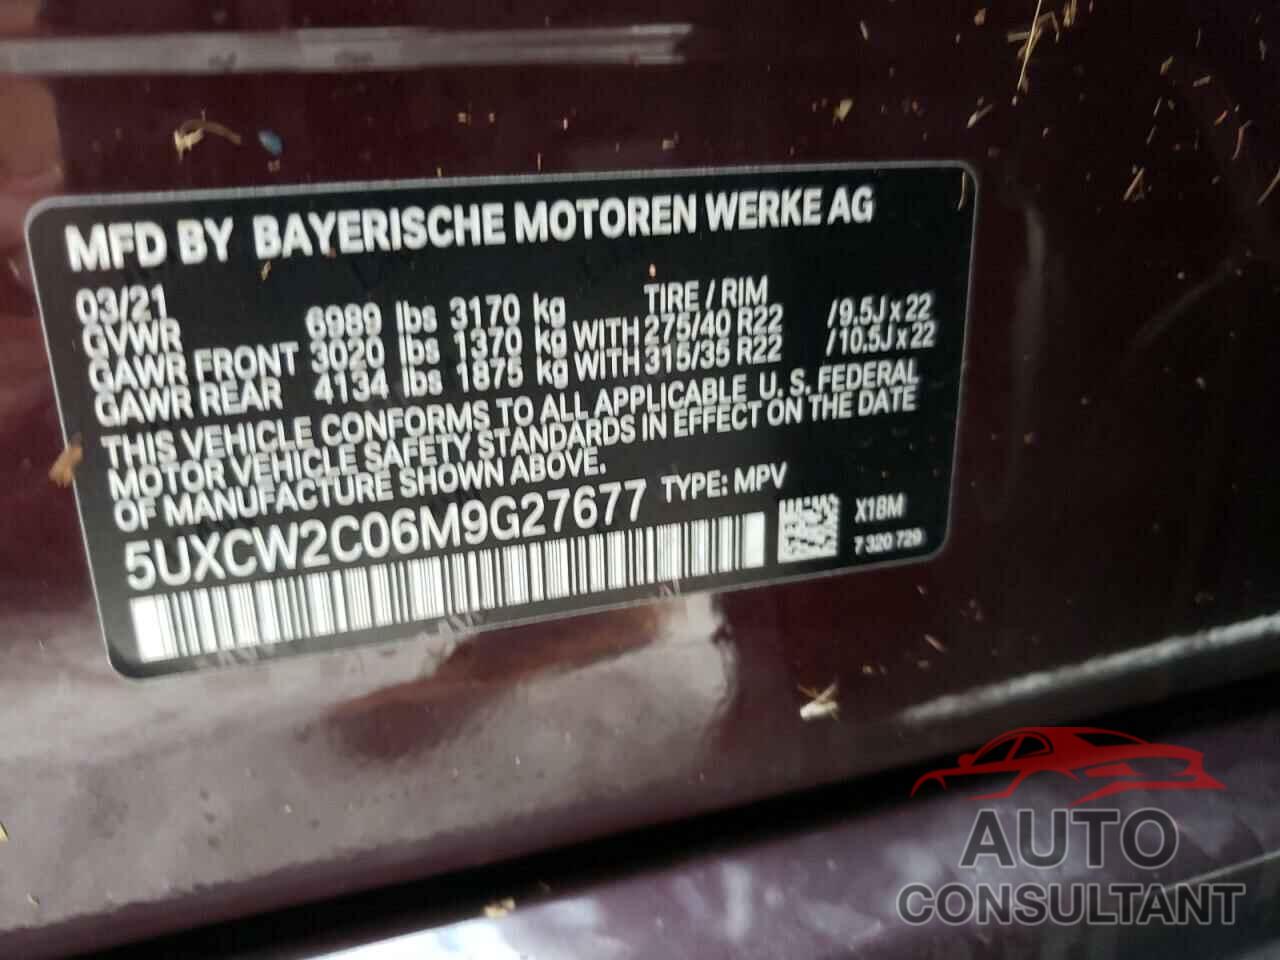 BMW X7 2021 - 5UXCW2C06M9G27677